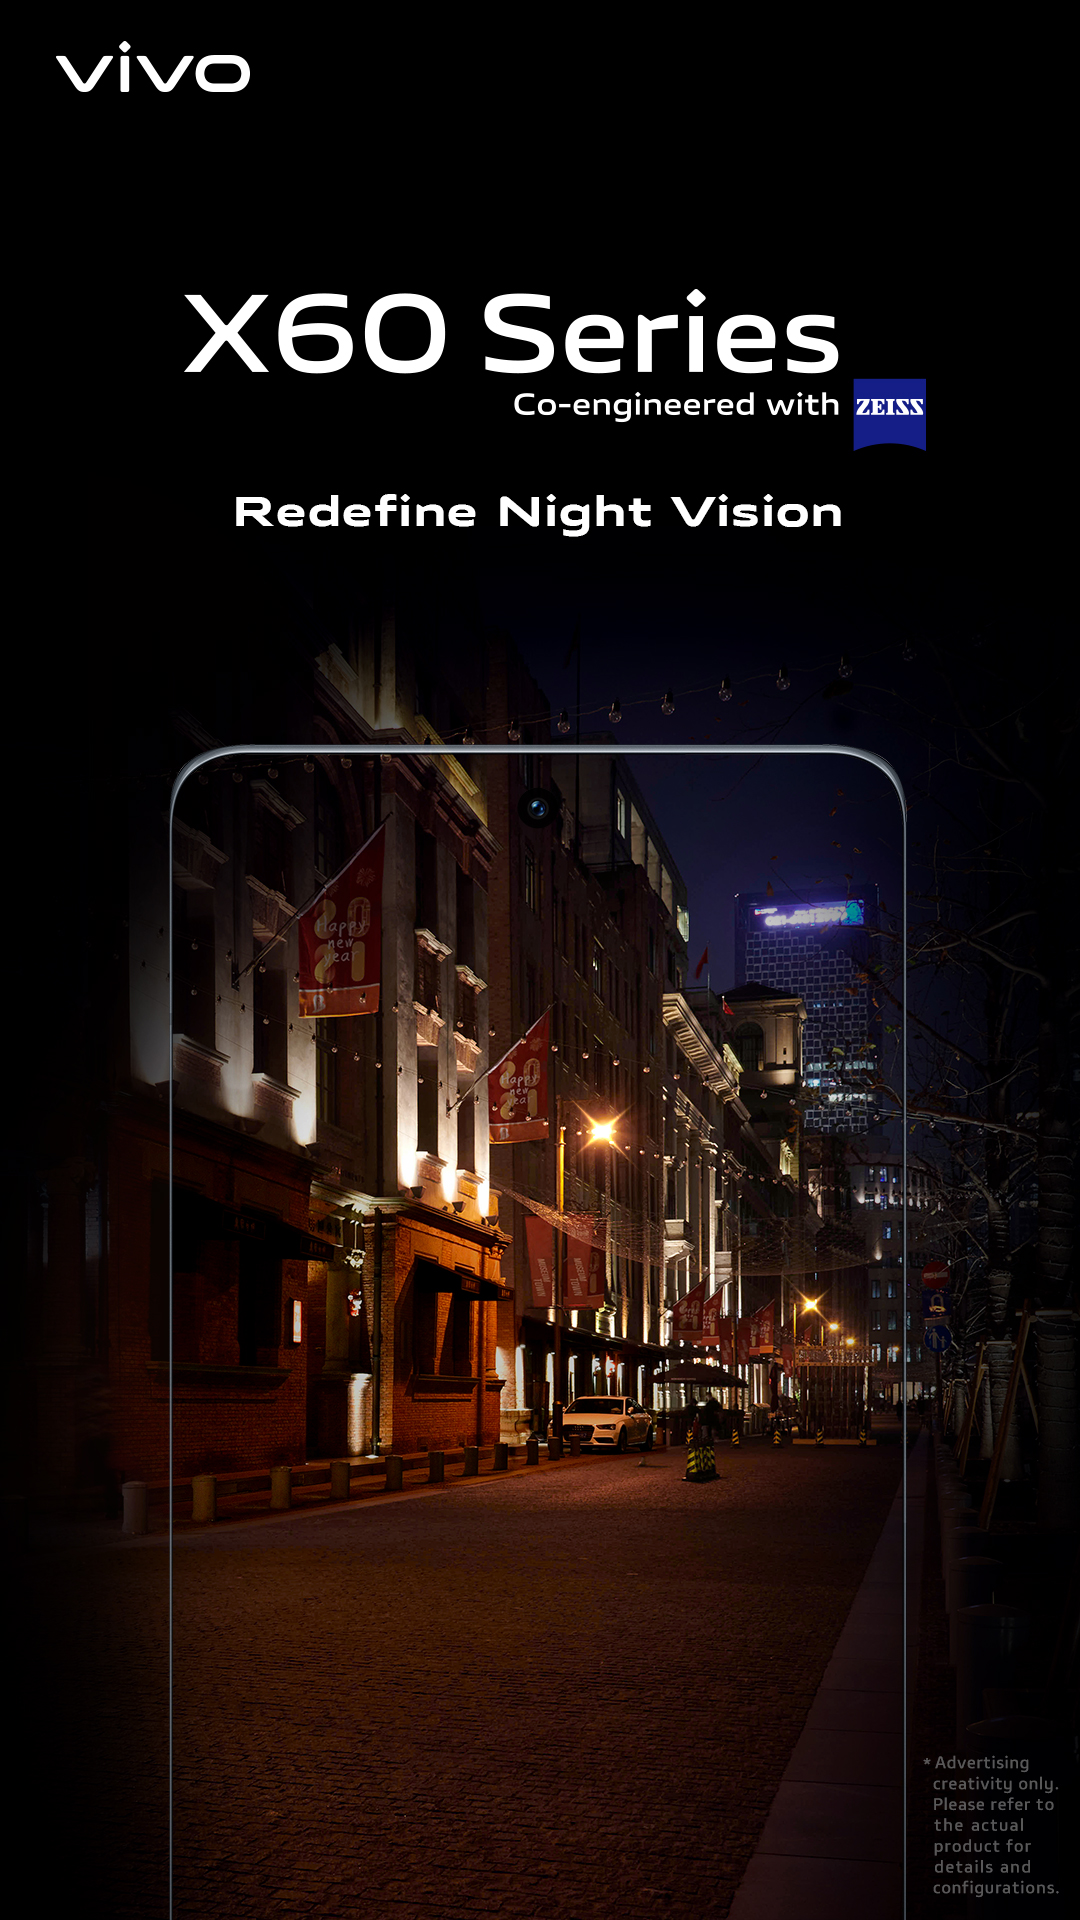 Redefine Night Vision